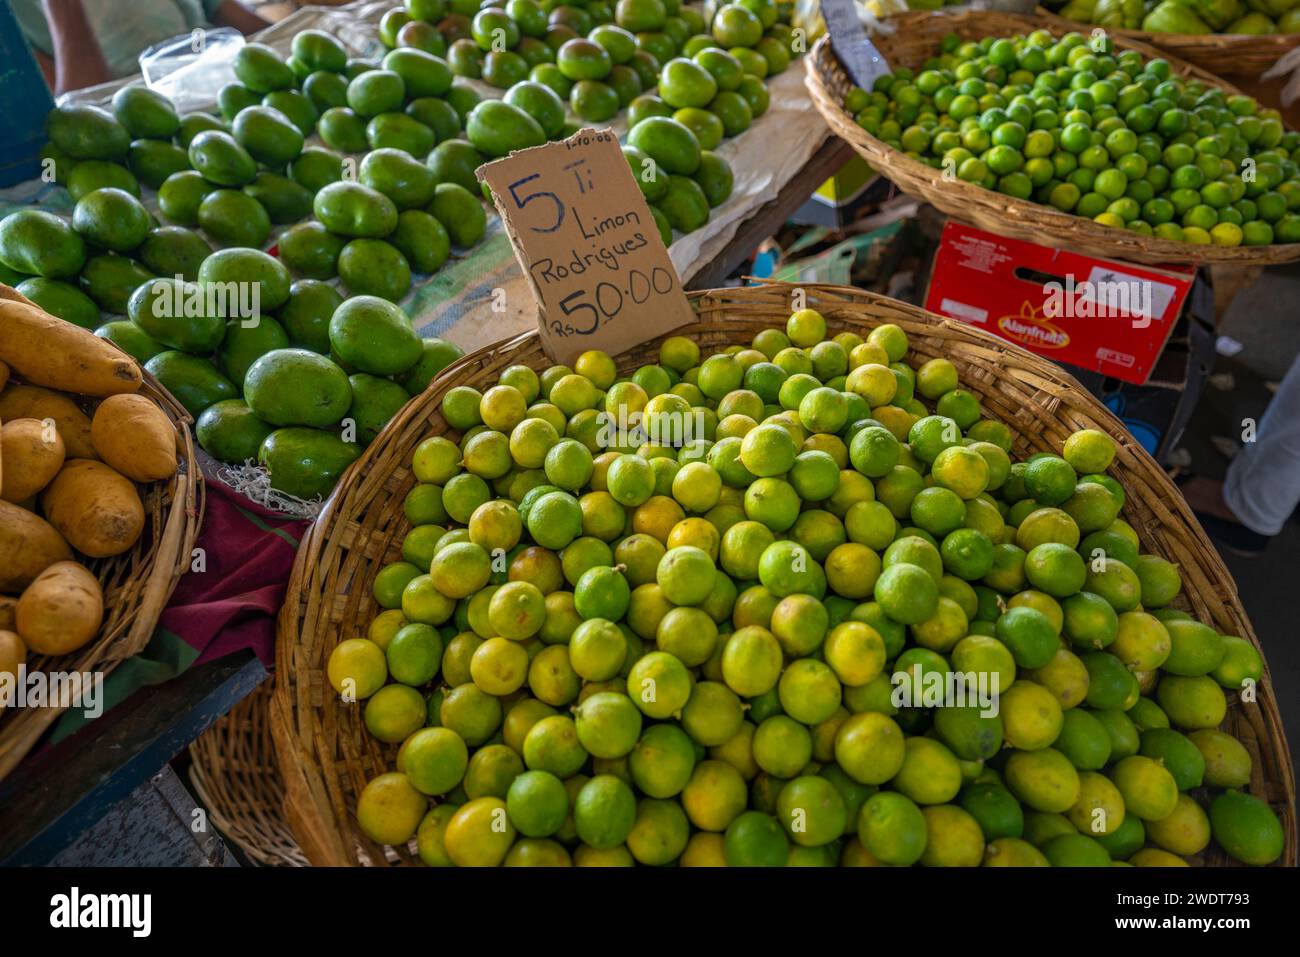 Blick auf einen Obststand, der Limetten und Mangos auf dem Markt in der Nähe von Bushaltestelle, Port Louis, Mauritius, Indischer Ozean, Afrika verkauft Stockfoto